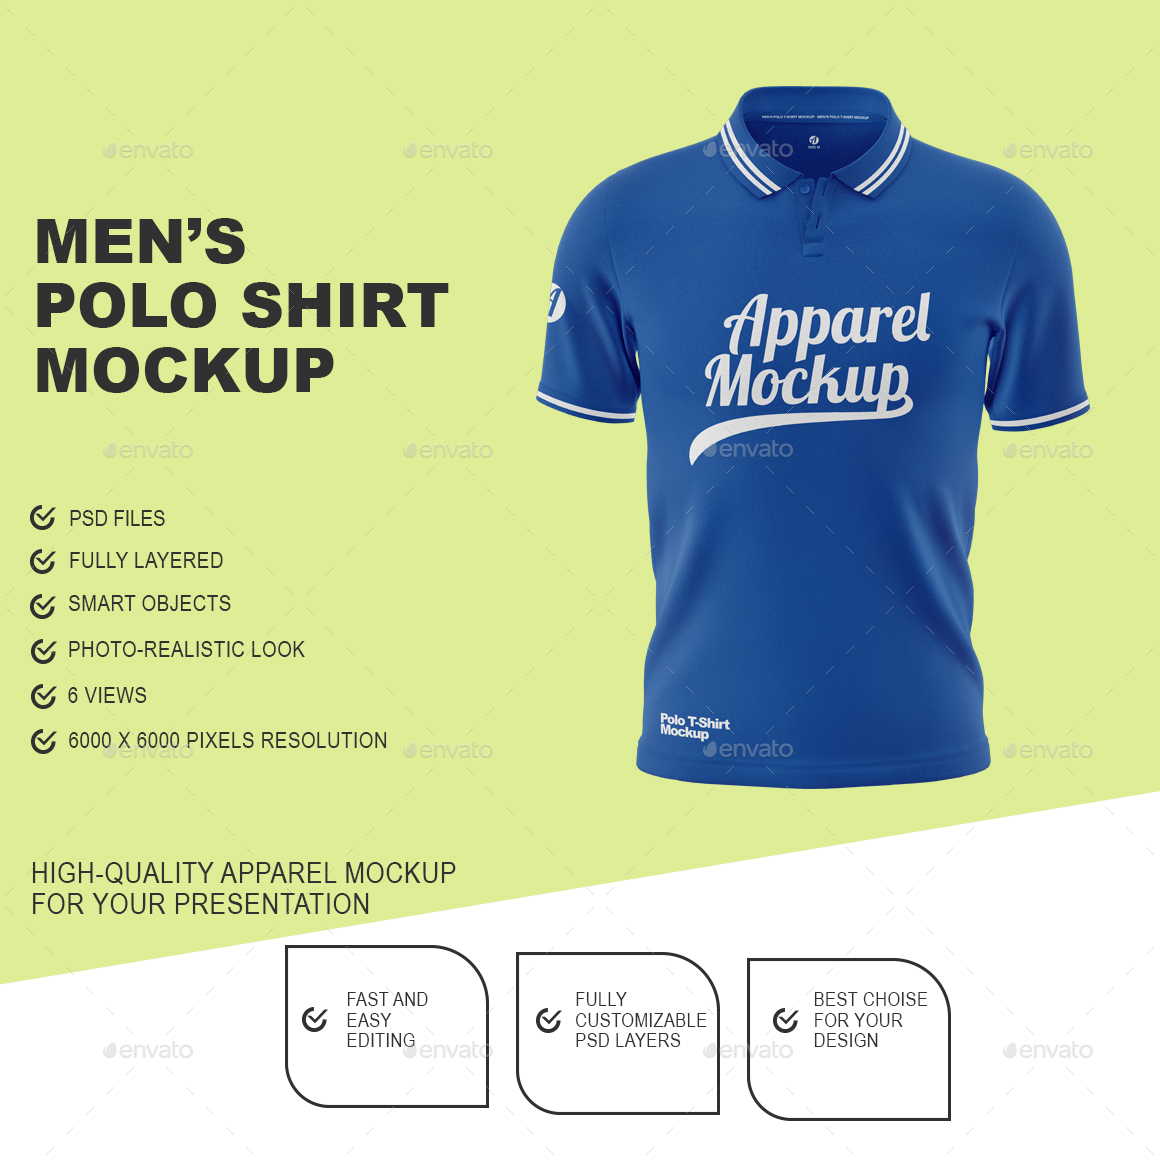 Men's Polo Shirt Mockup, Graphics | GraphicRiver